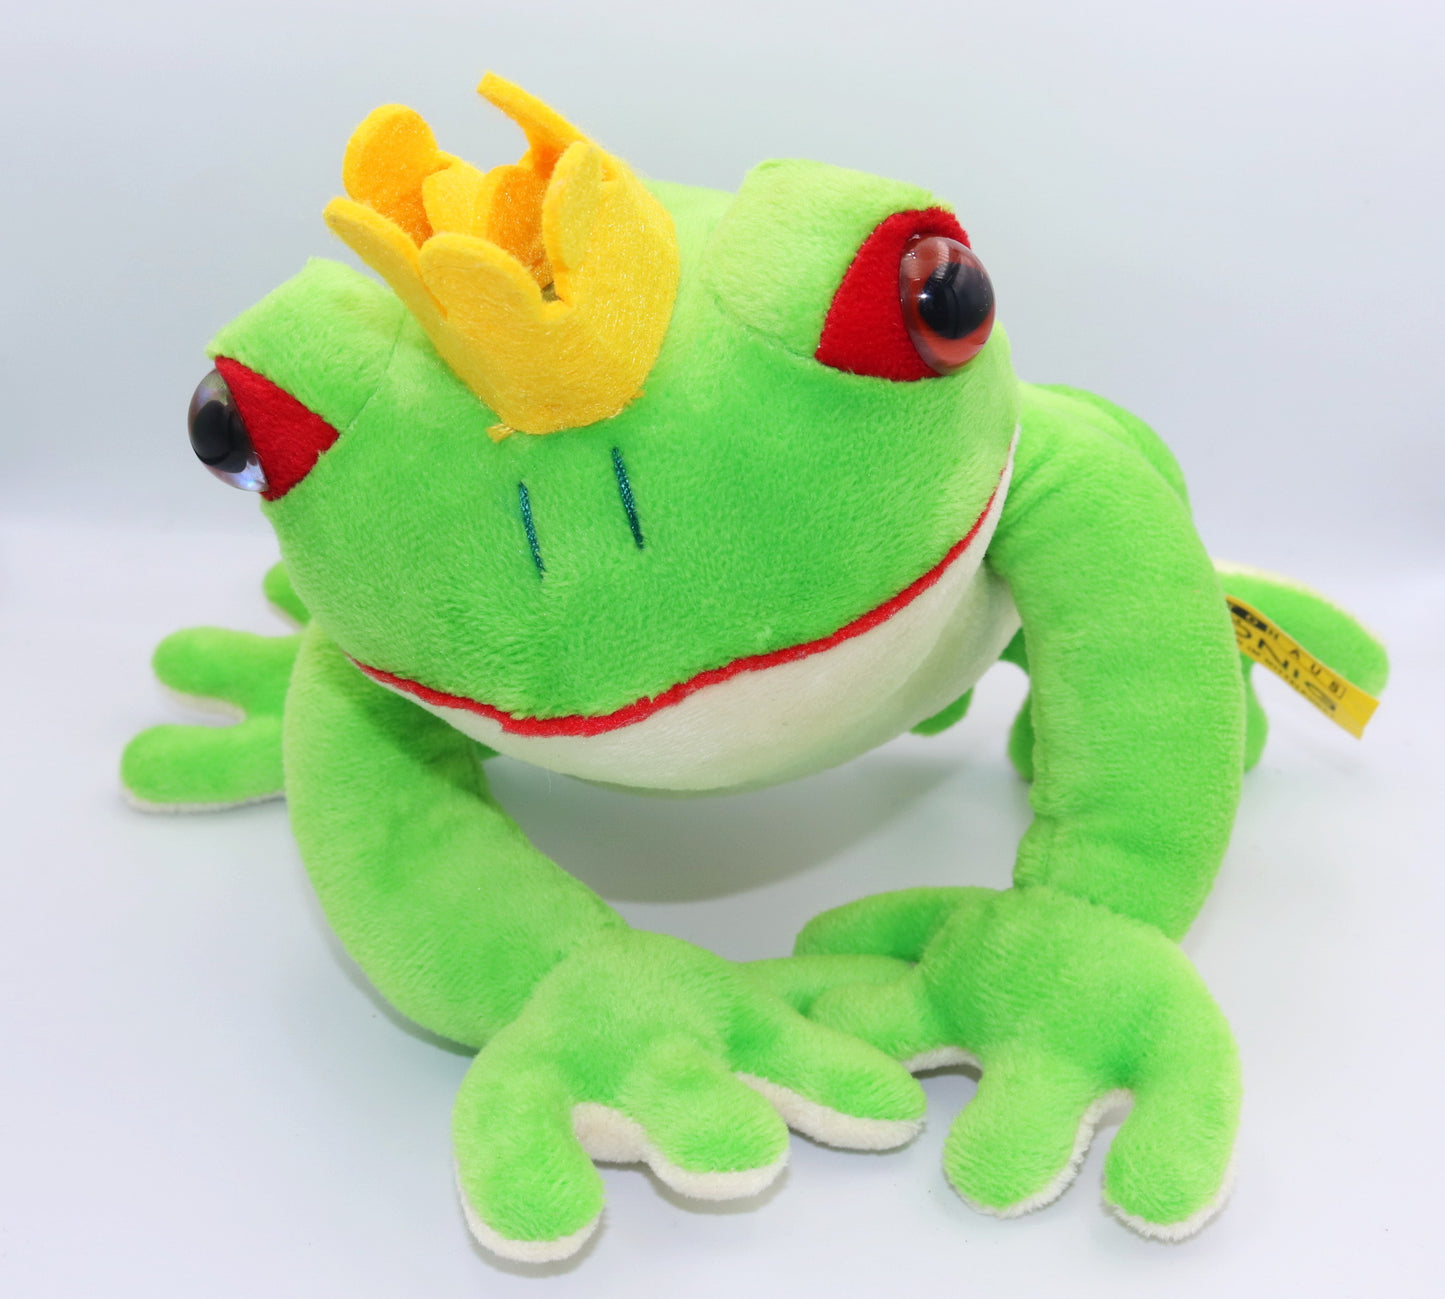 Plush King frog